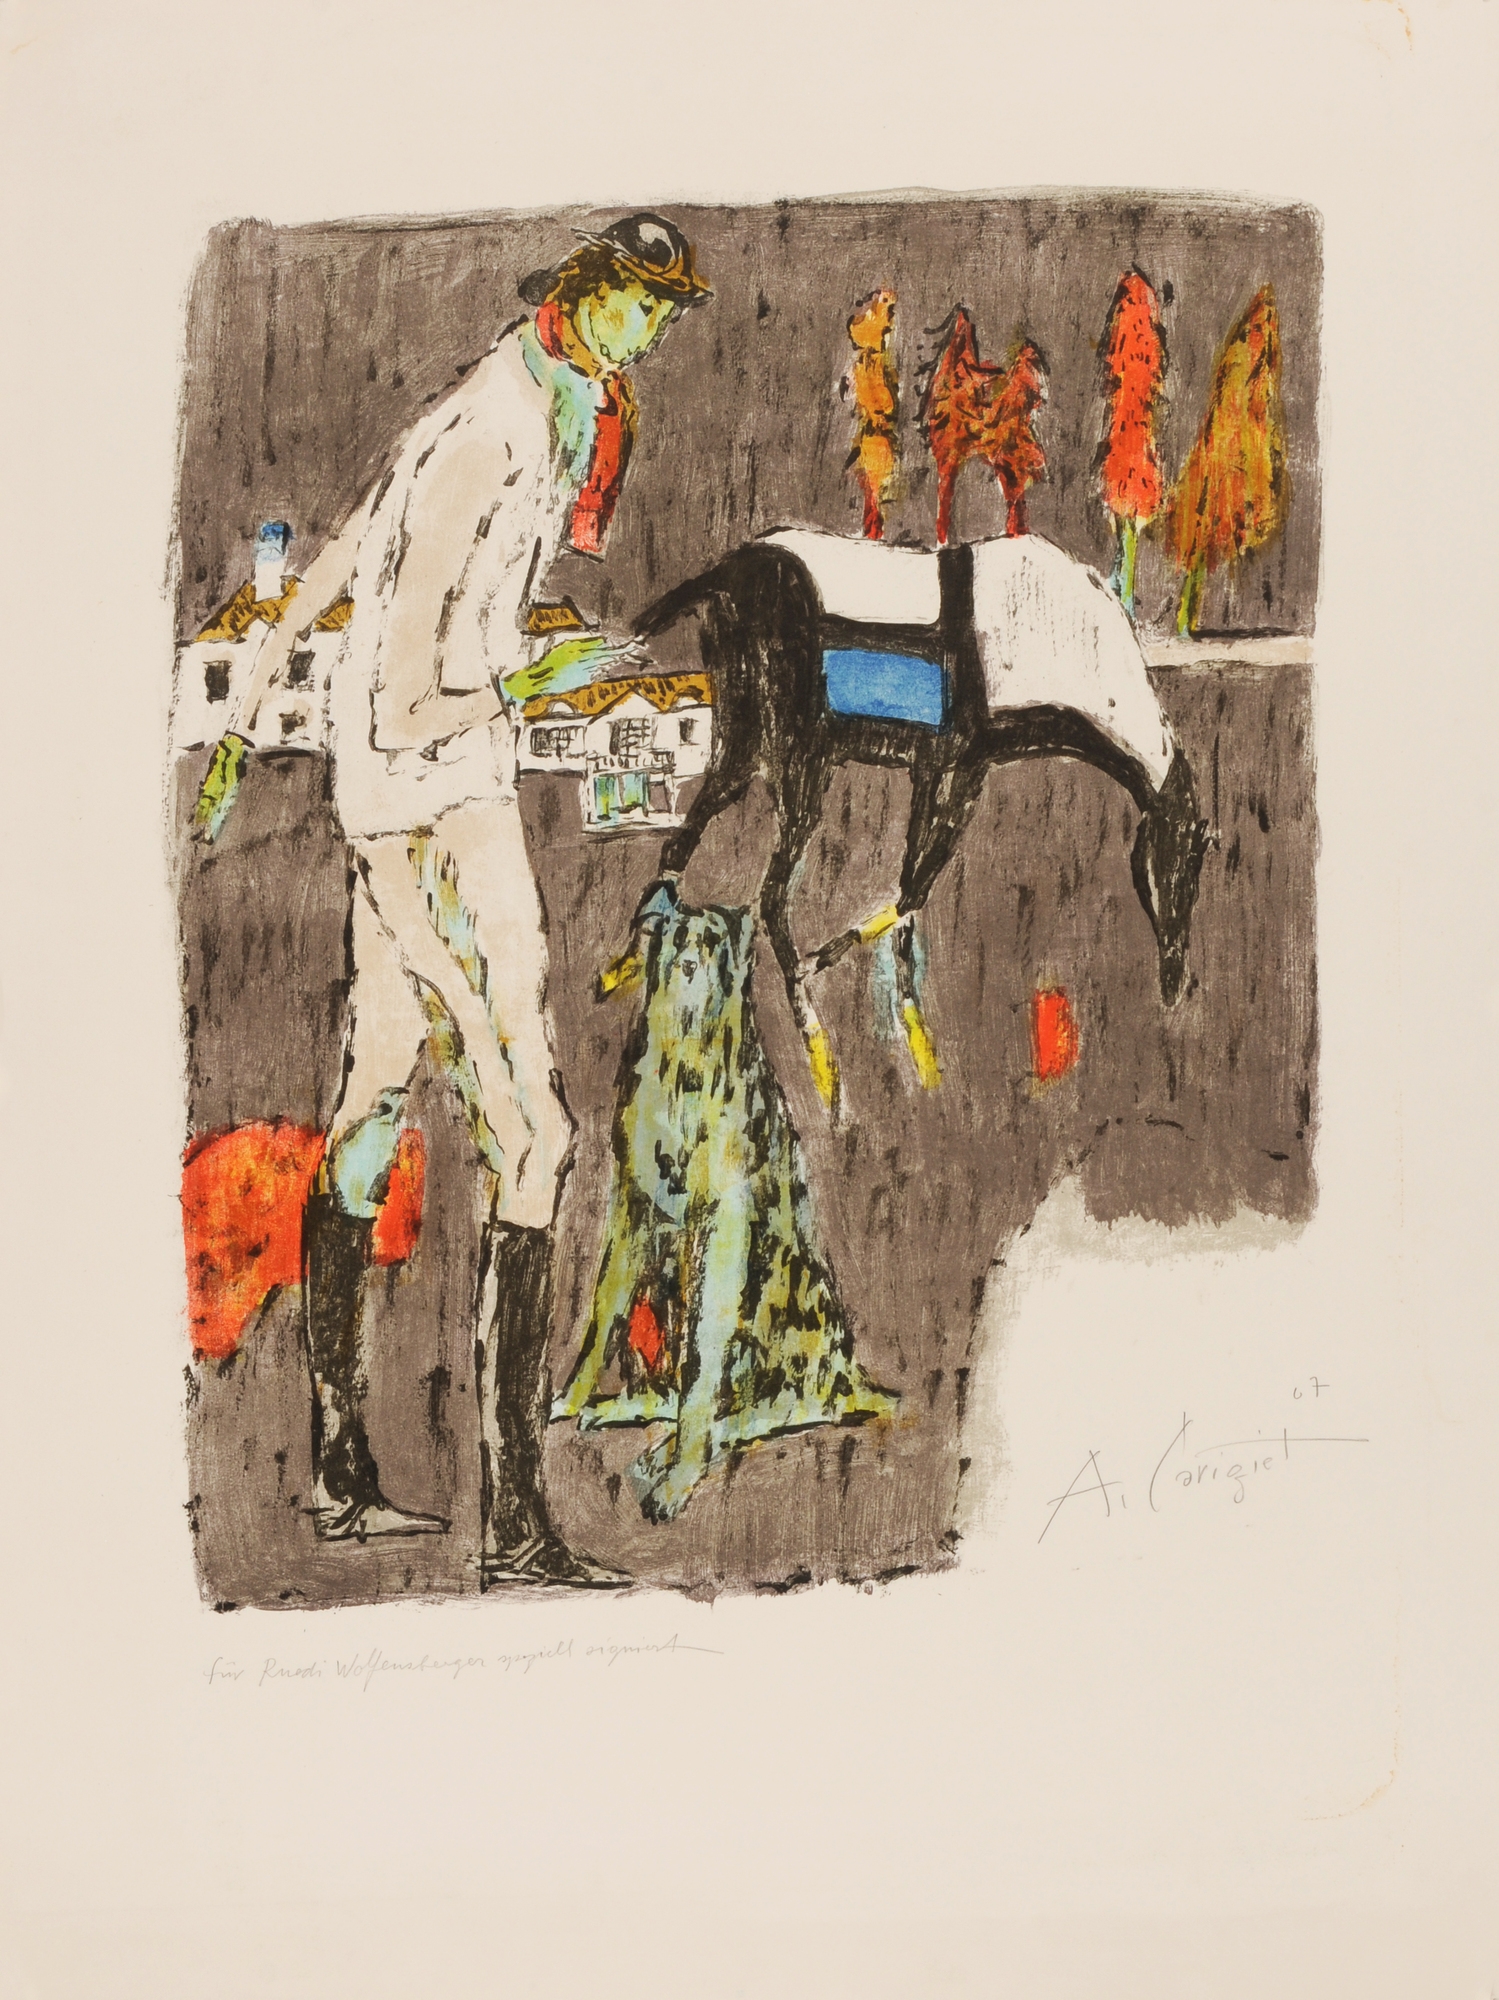 Artwork by Alois Carigiet, Reiterin mit Pferd, Made of Lithograph